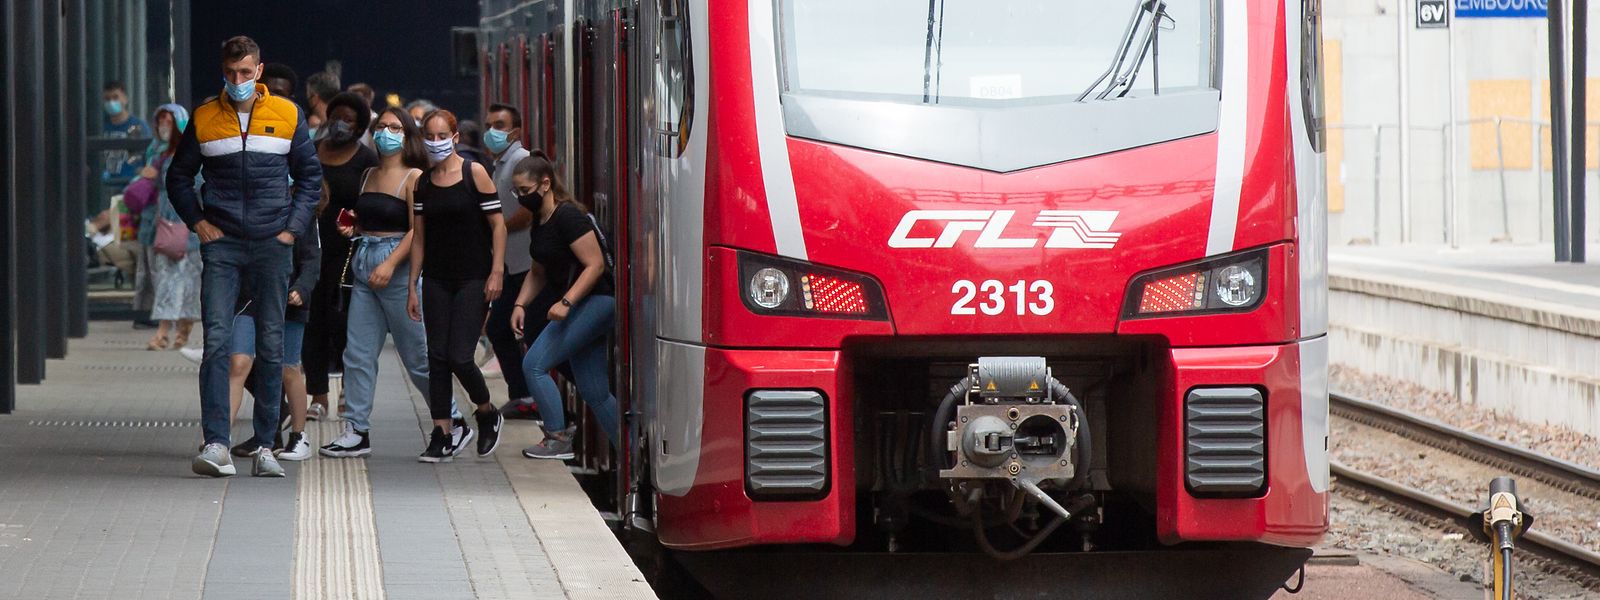 Pour effectuer la liaison Bettembourg-Luxembourg, les usagers du sillon lorrain devront emprunter les trains de la ligne CFL Rodange-Luxembourg à partir de ce lundi 8 août, pour cinq semaines.